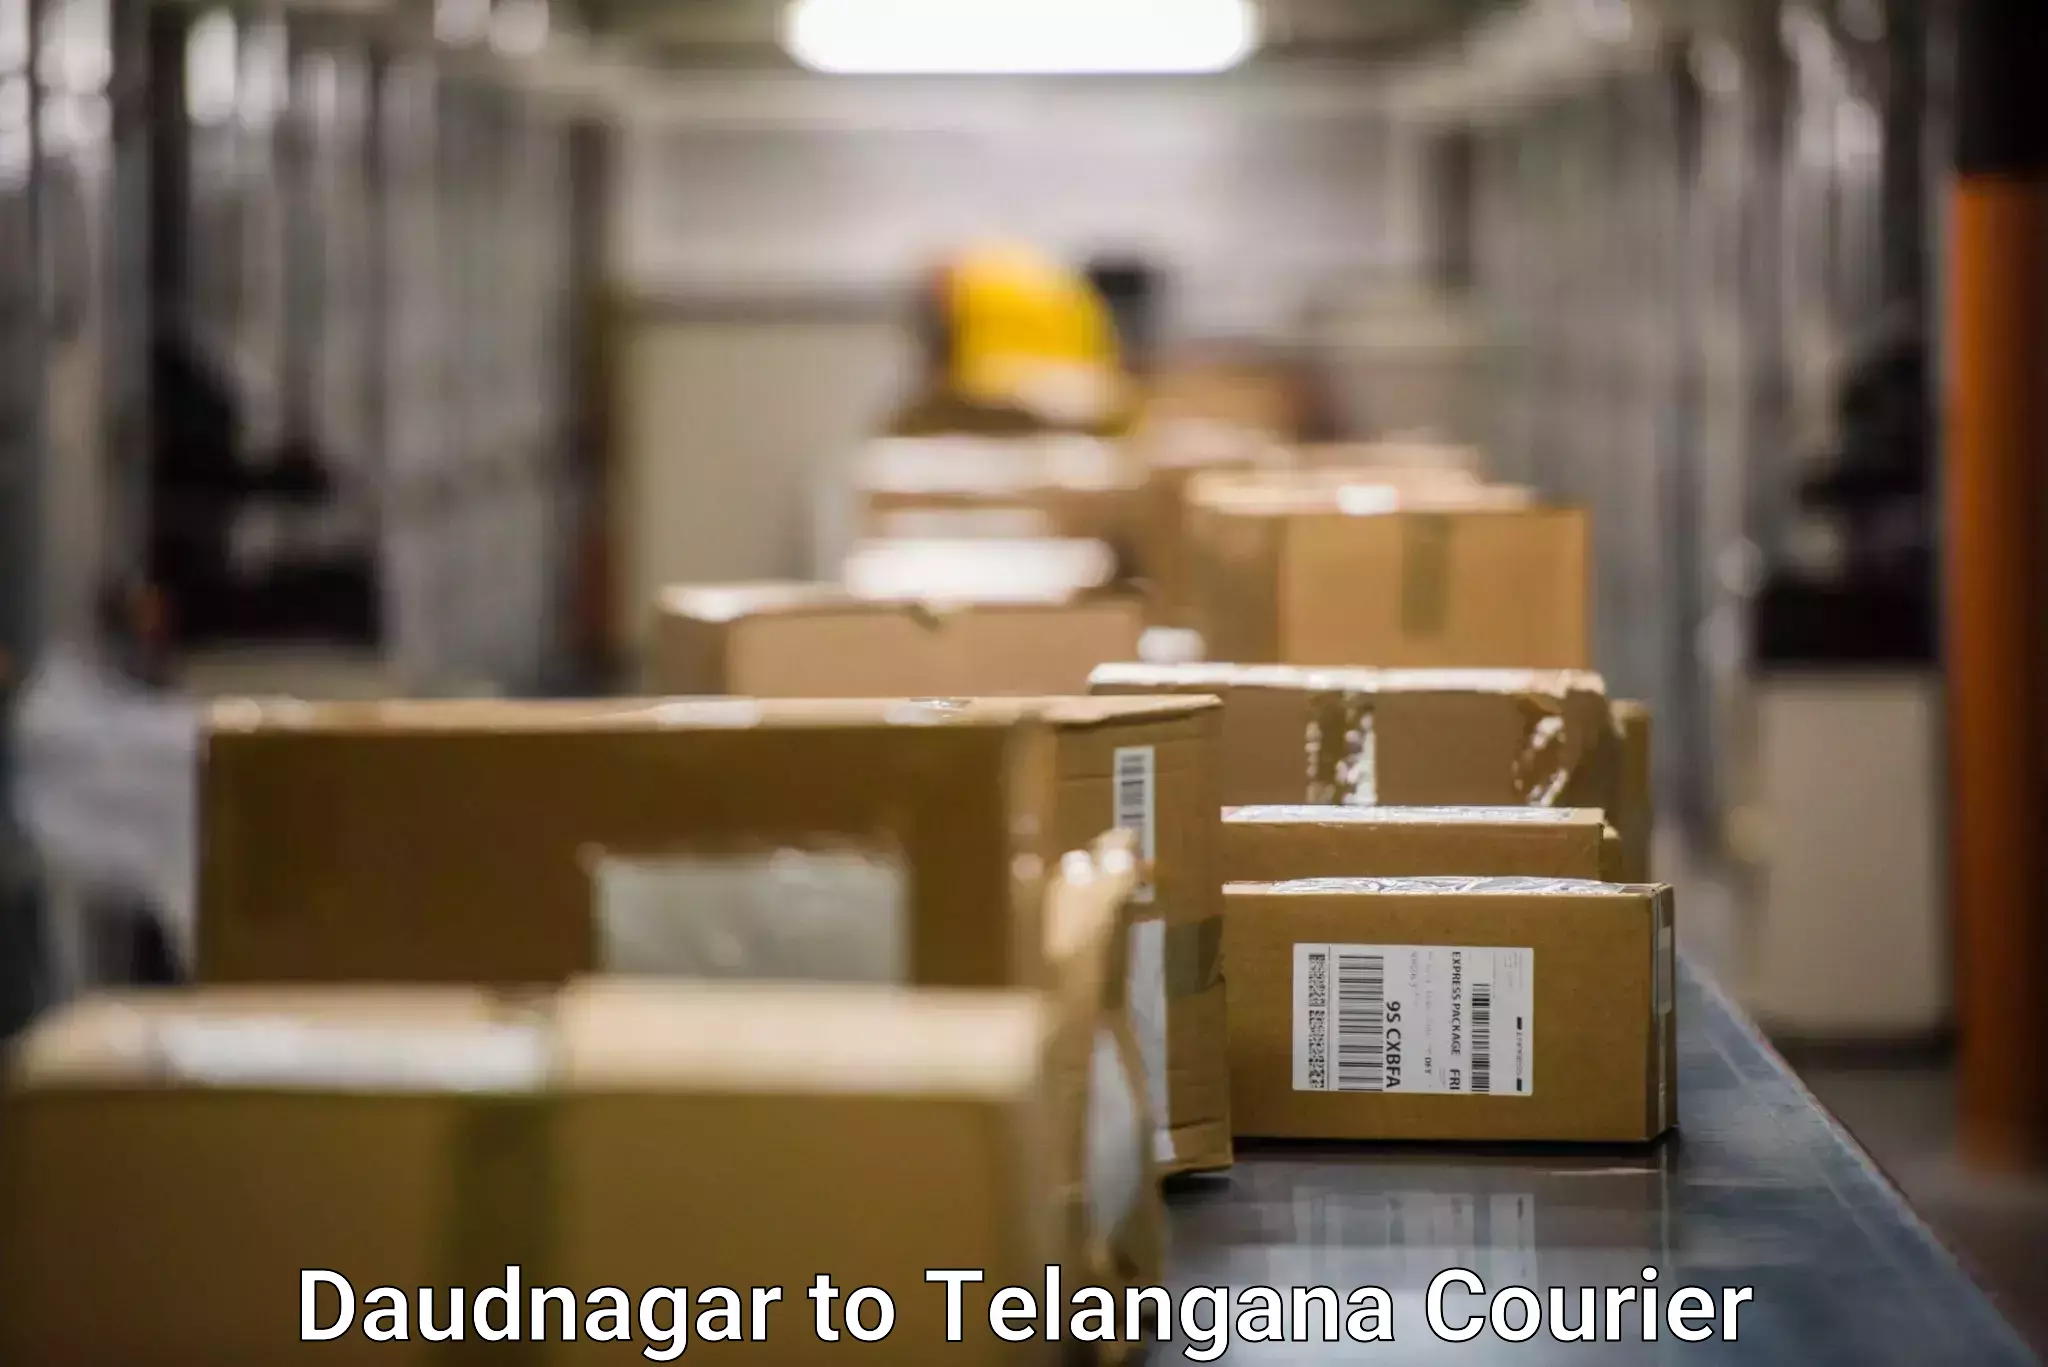 Residential courier service Daudnagar to Kothur